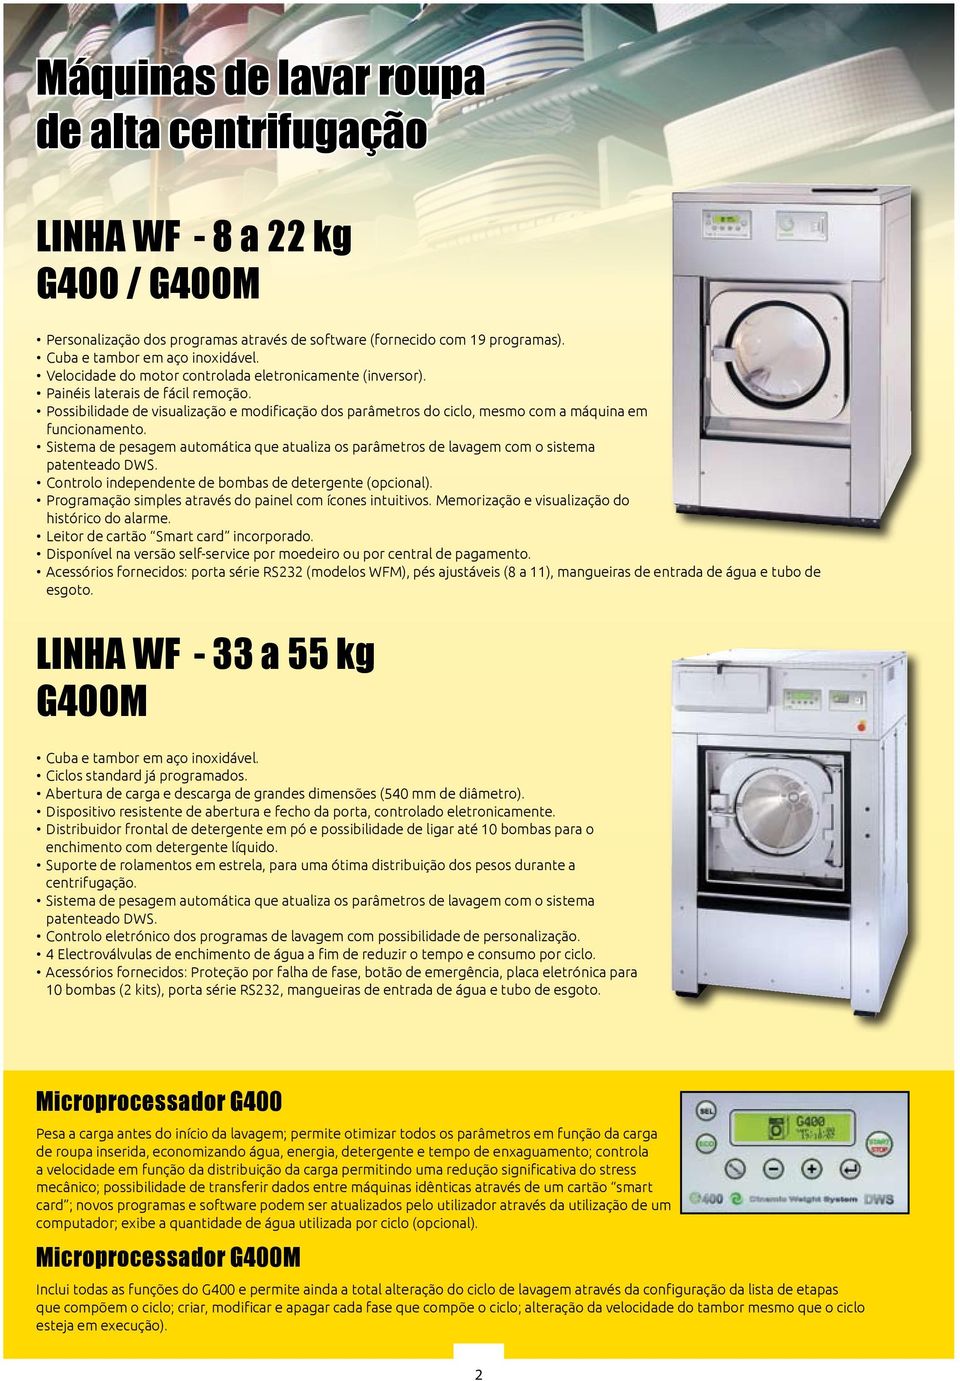 Sistema de pesagem automática que atualiza os parâmetros de lavagem com o sistema patenteado DWS. Controlo independente de bombas de detergente (opcional).